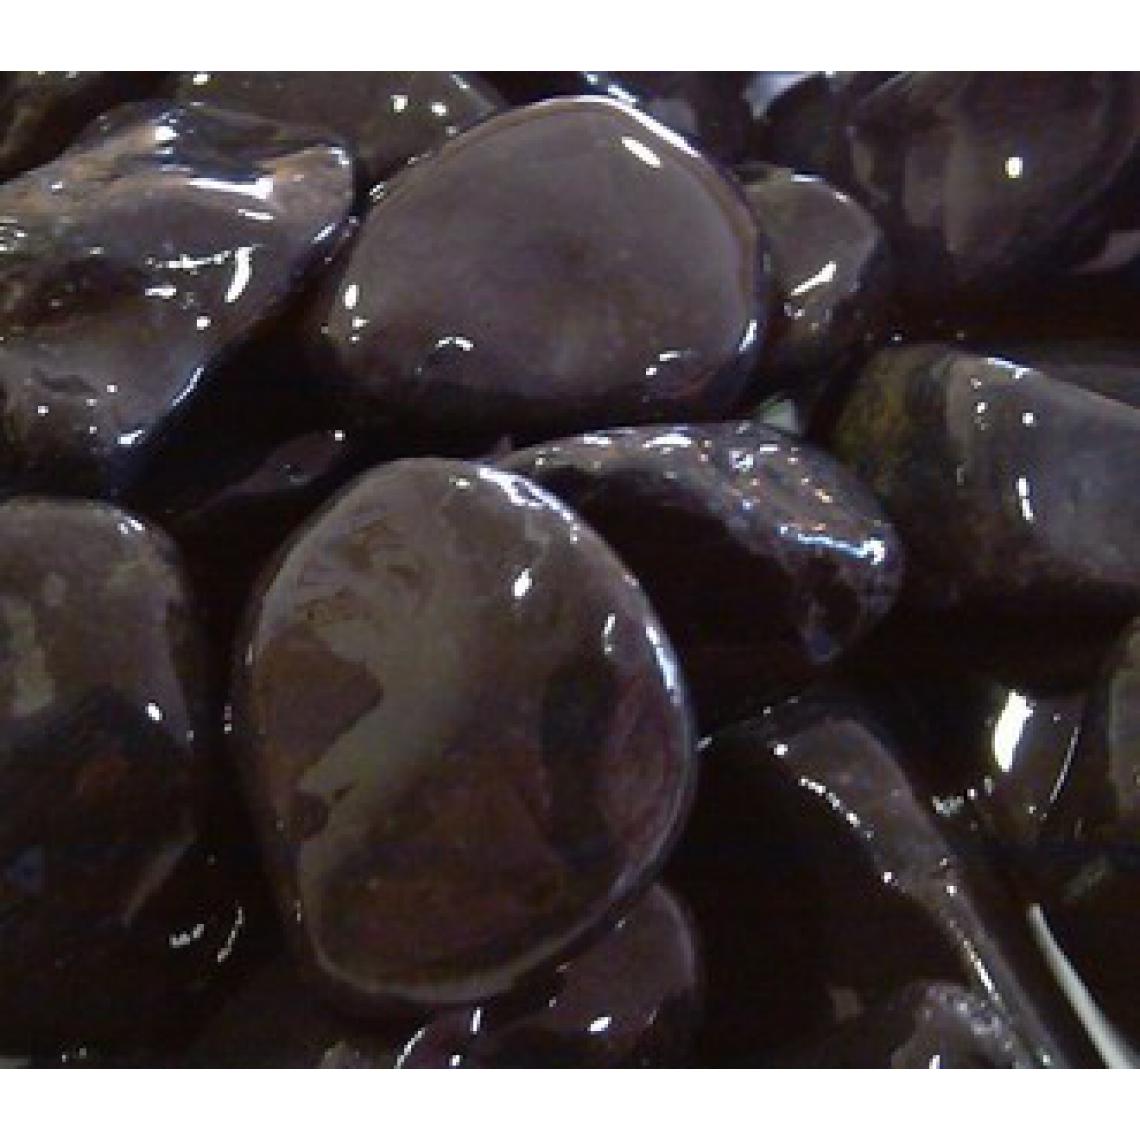 Scmcs - Marbre roulé noir ébène 30/60 400 kg - 16x25kgs - Graviers et galets